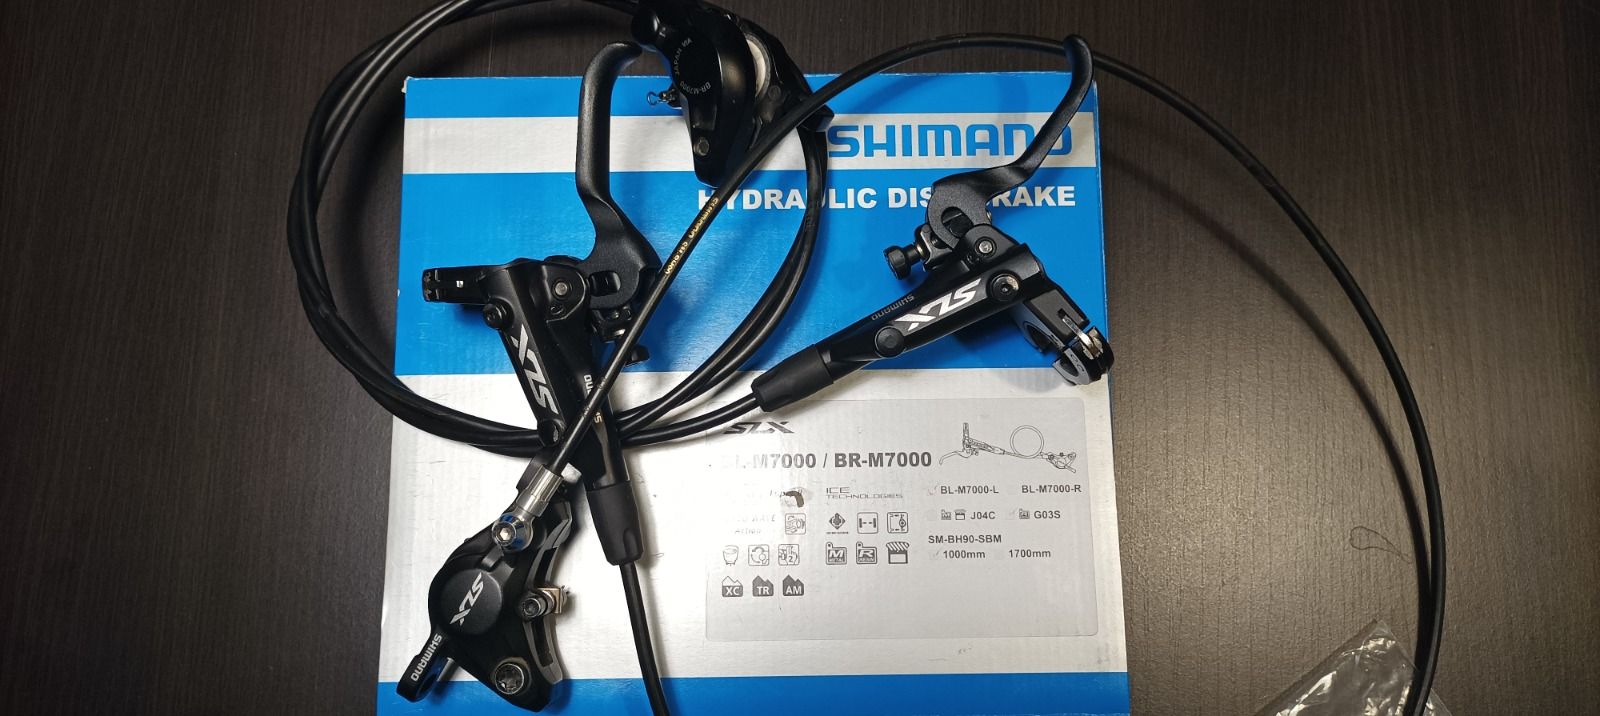 Shimano slx m7000, установлена грязезащита МЦ цена 170 дол с колодками резин